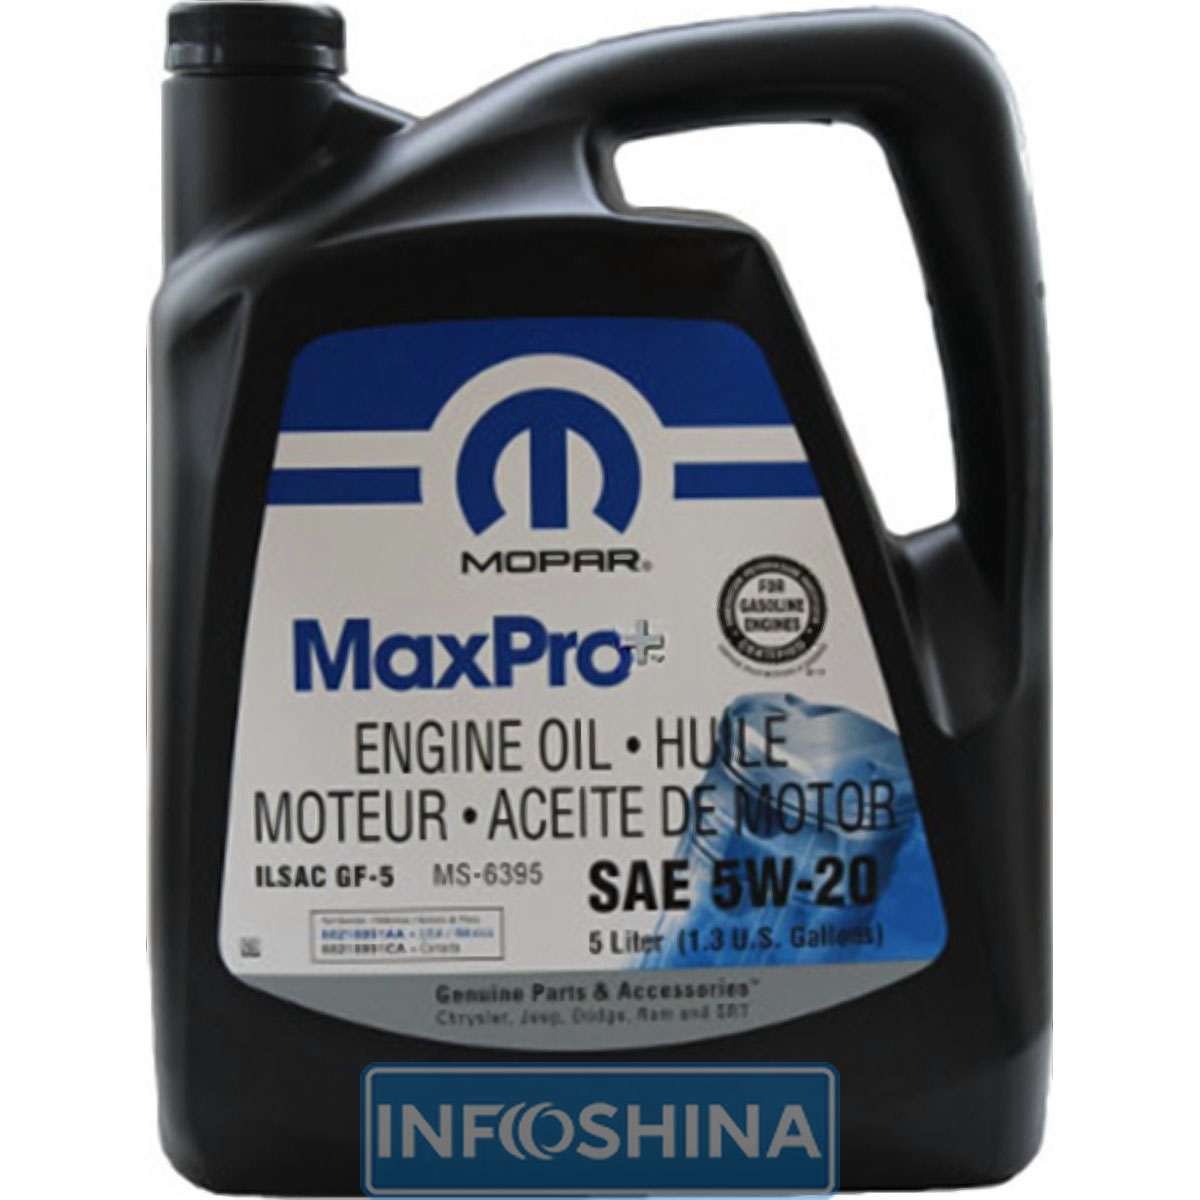 Купить масло MOPAR MaxPro+ SAE 0W-20 Engine Oil (5л)